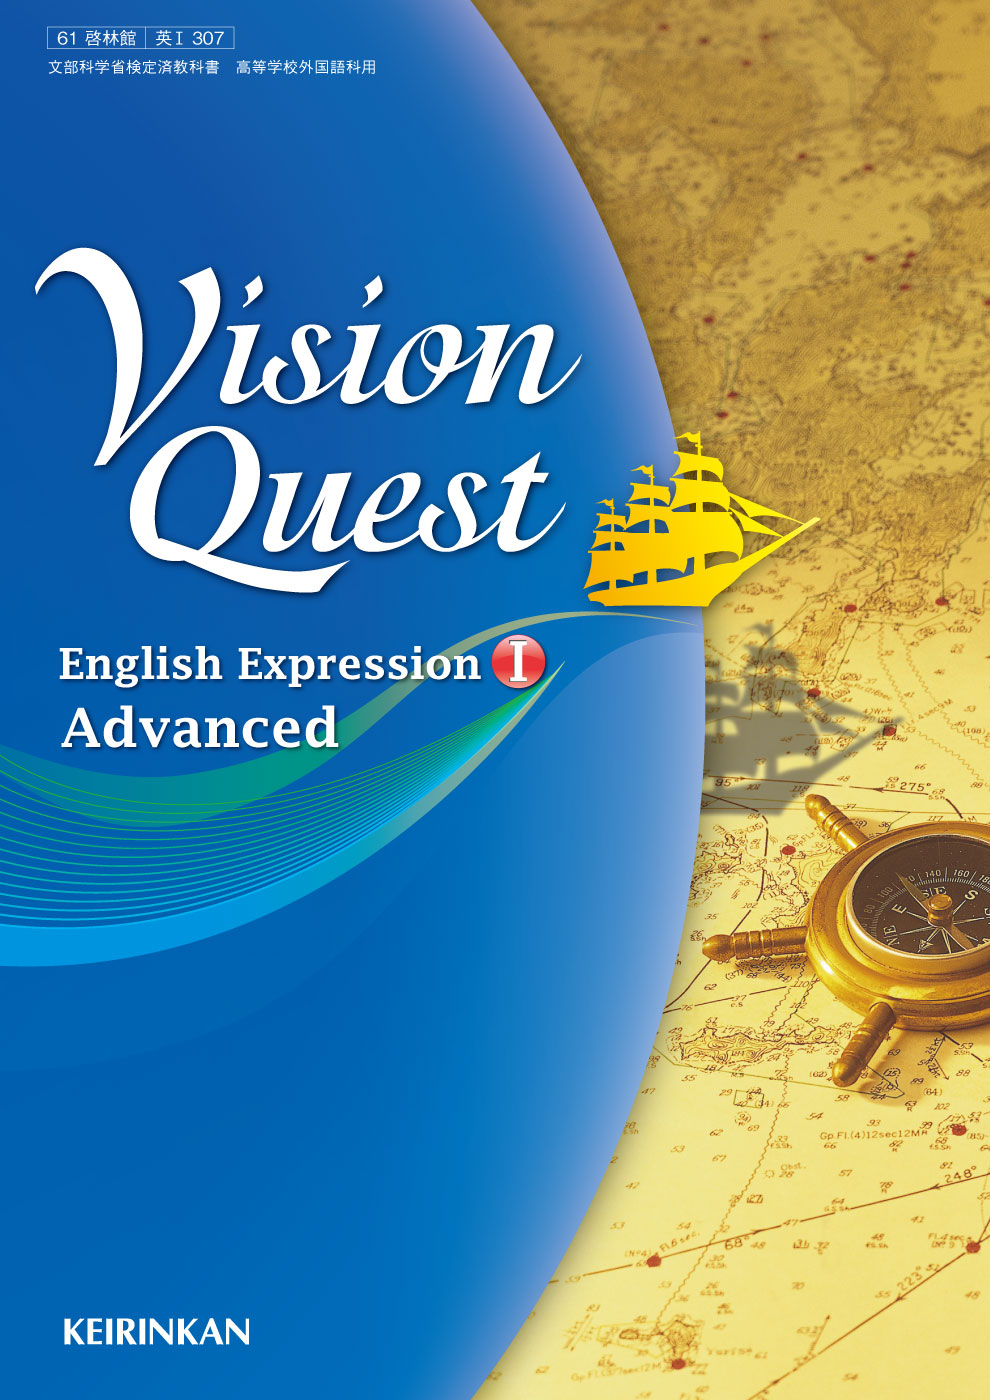 啓林館 Vision Quest 関連教材&教材データ・テスト作成プログラム付 秋田店